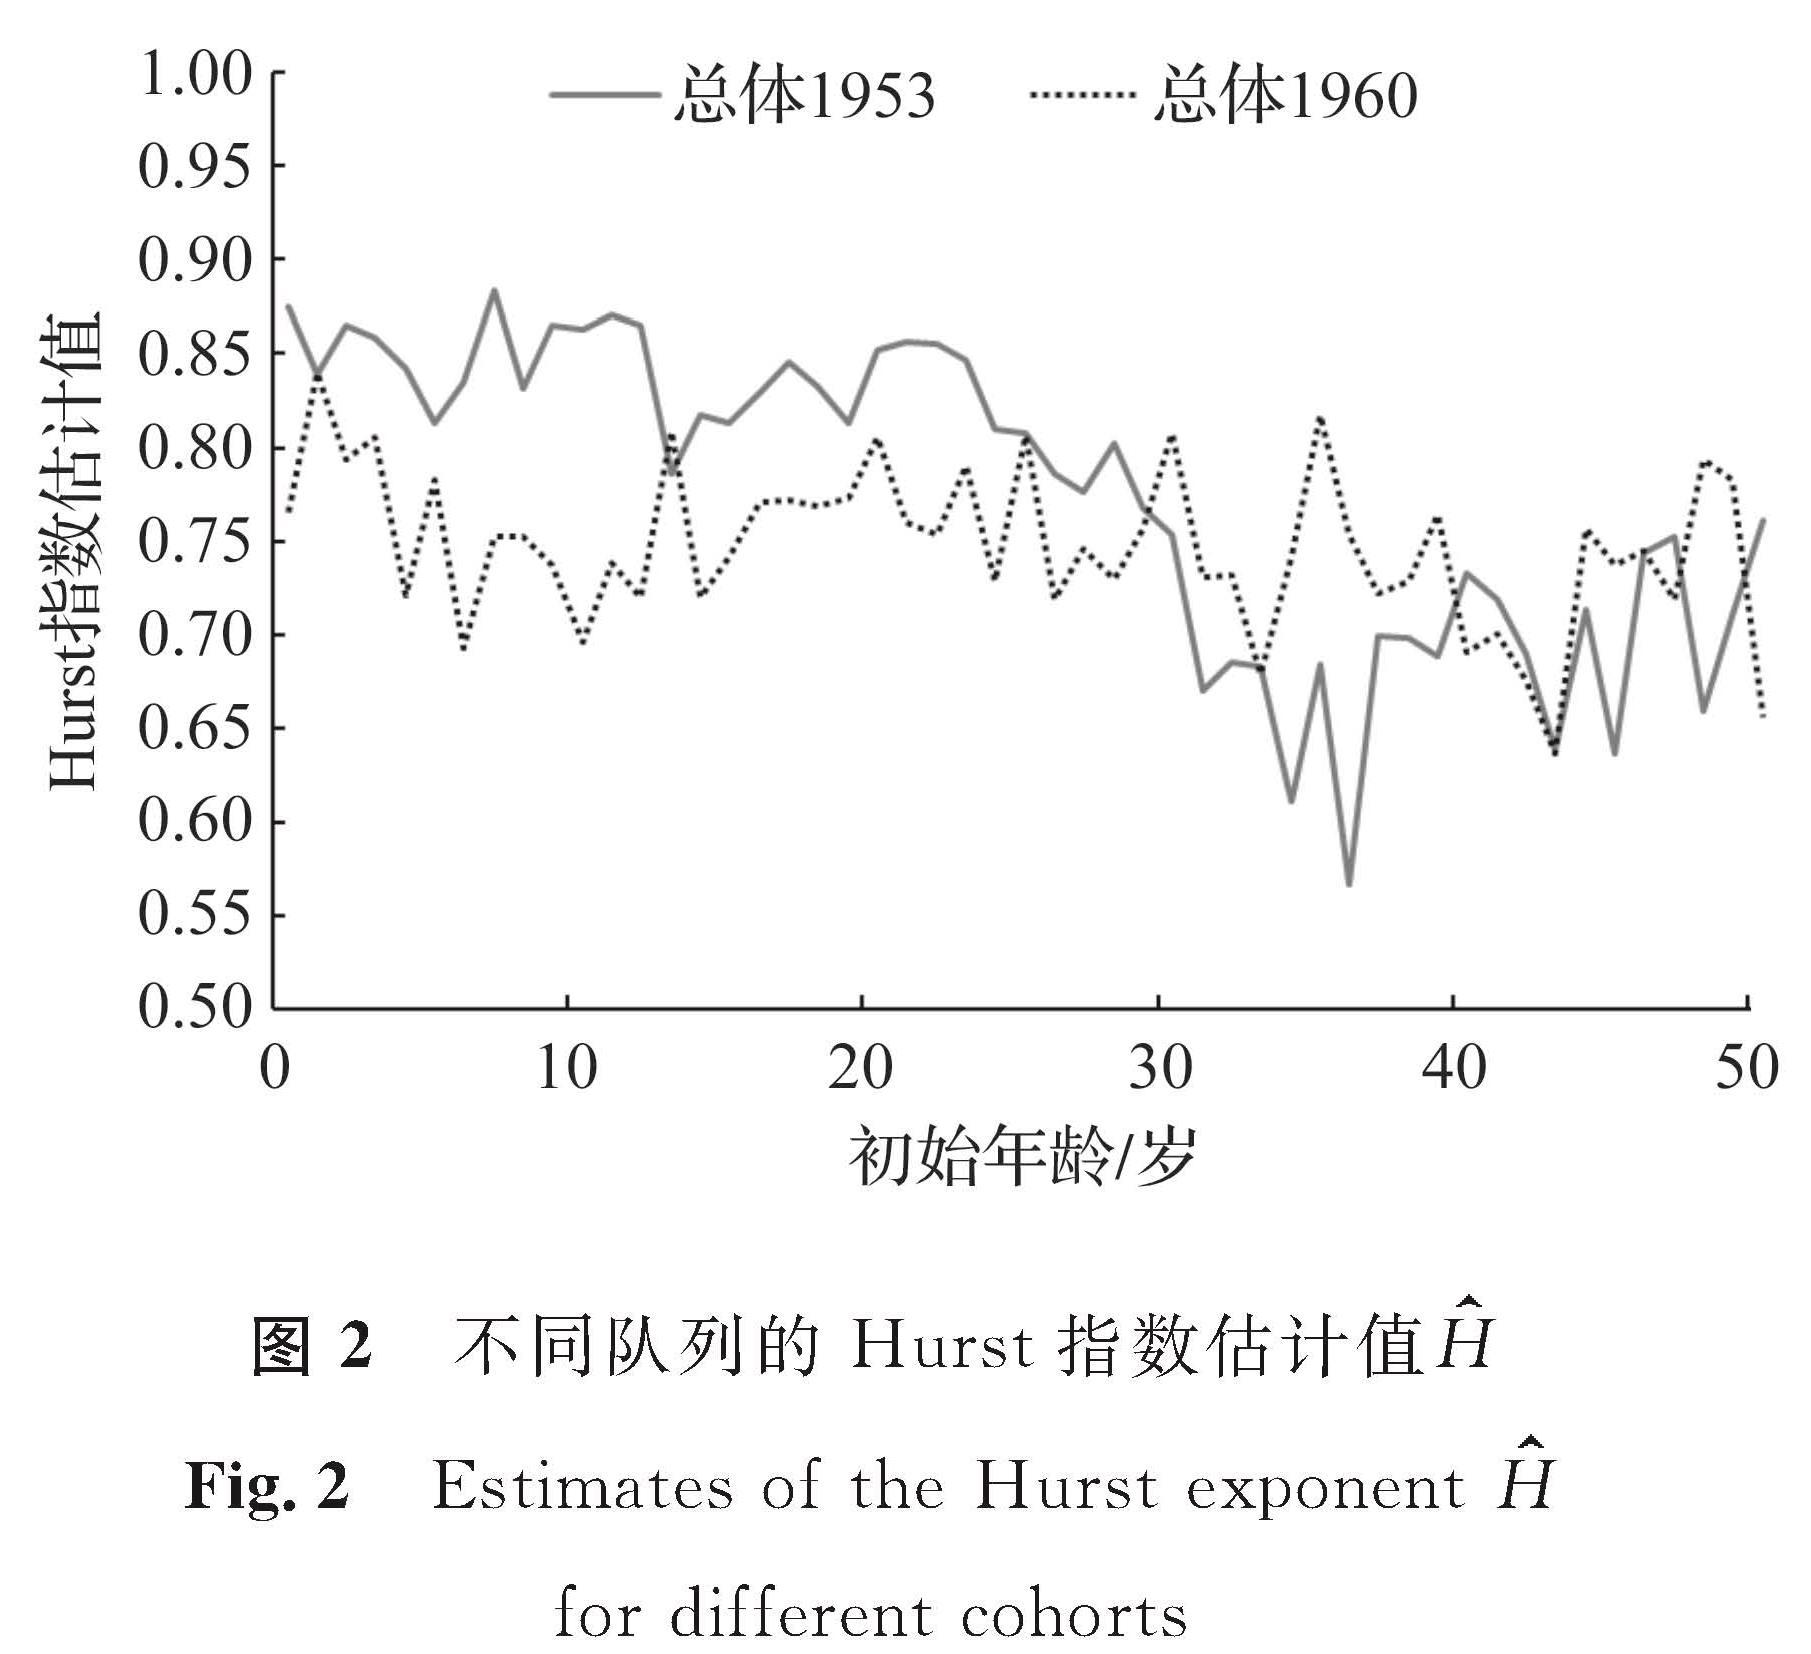 图2 不同队列的Hurst指数估计值H<br/>Fig.2 Estimates of the Hurst exponent H for different cohorts